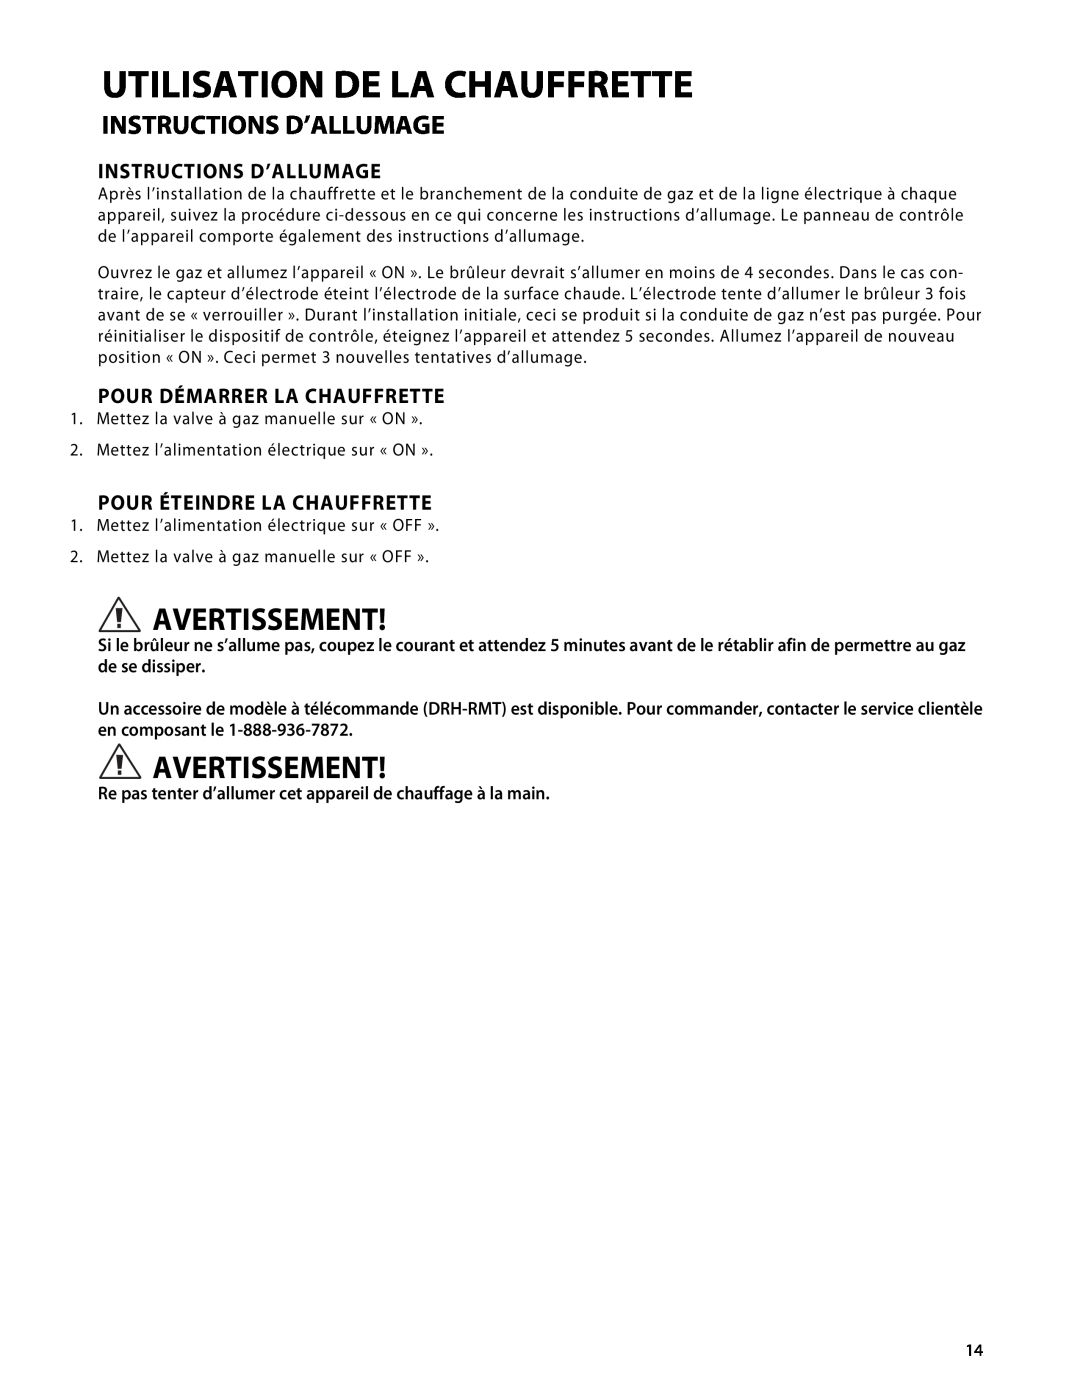 Fisher & Paykel DRH-48N manual Utilisation De La Chauffrette, Instructions D’Allumage, Pour Démarrer La Chauffrette 